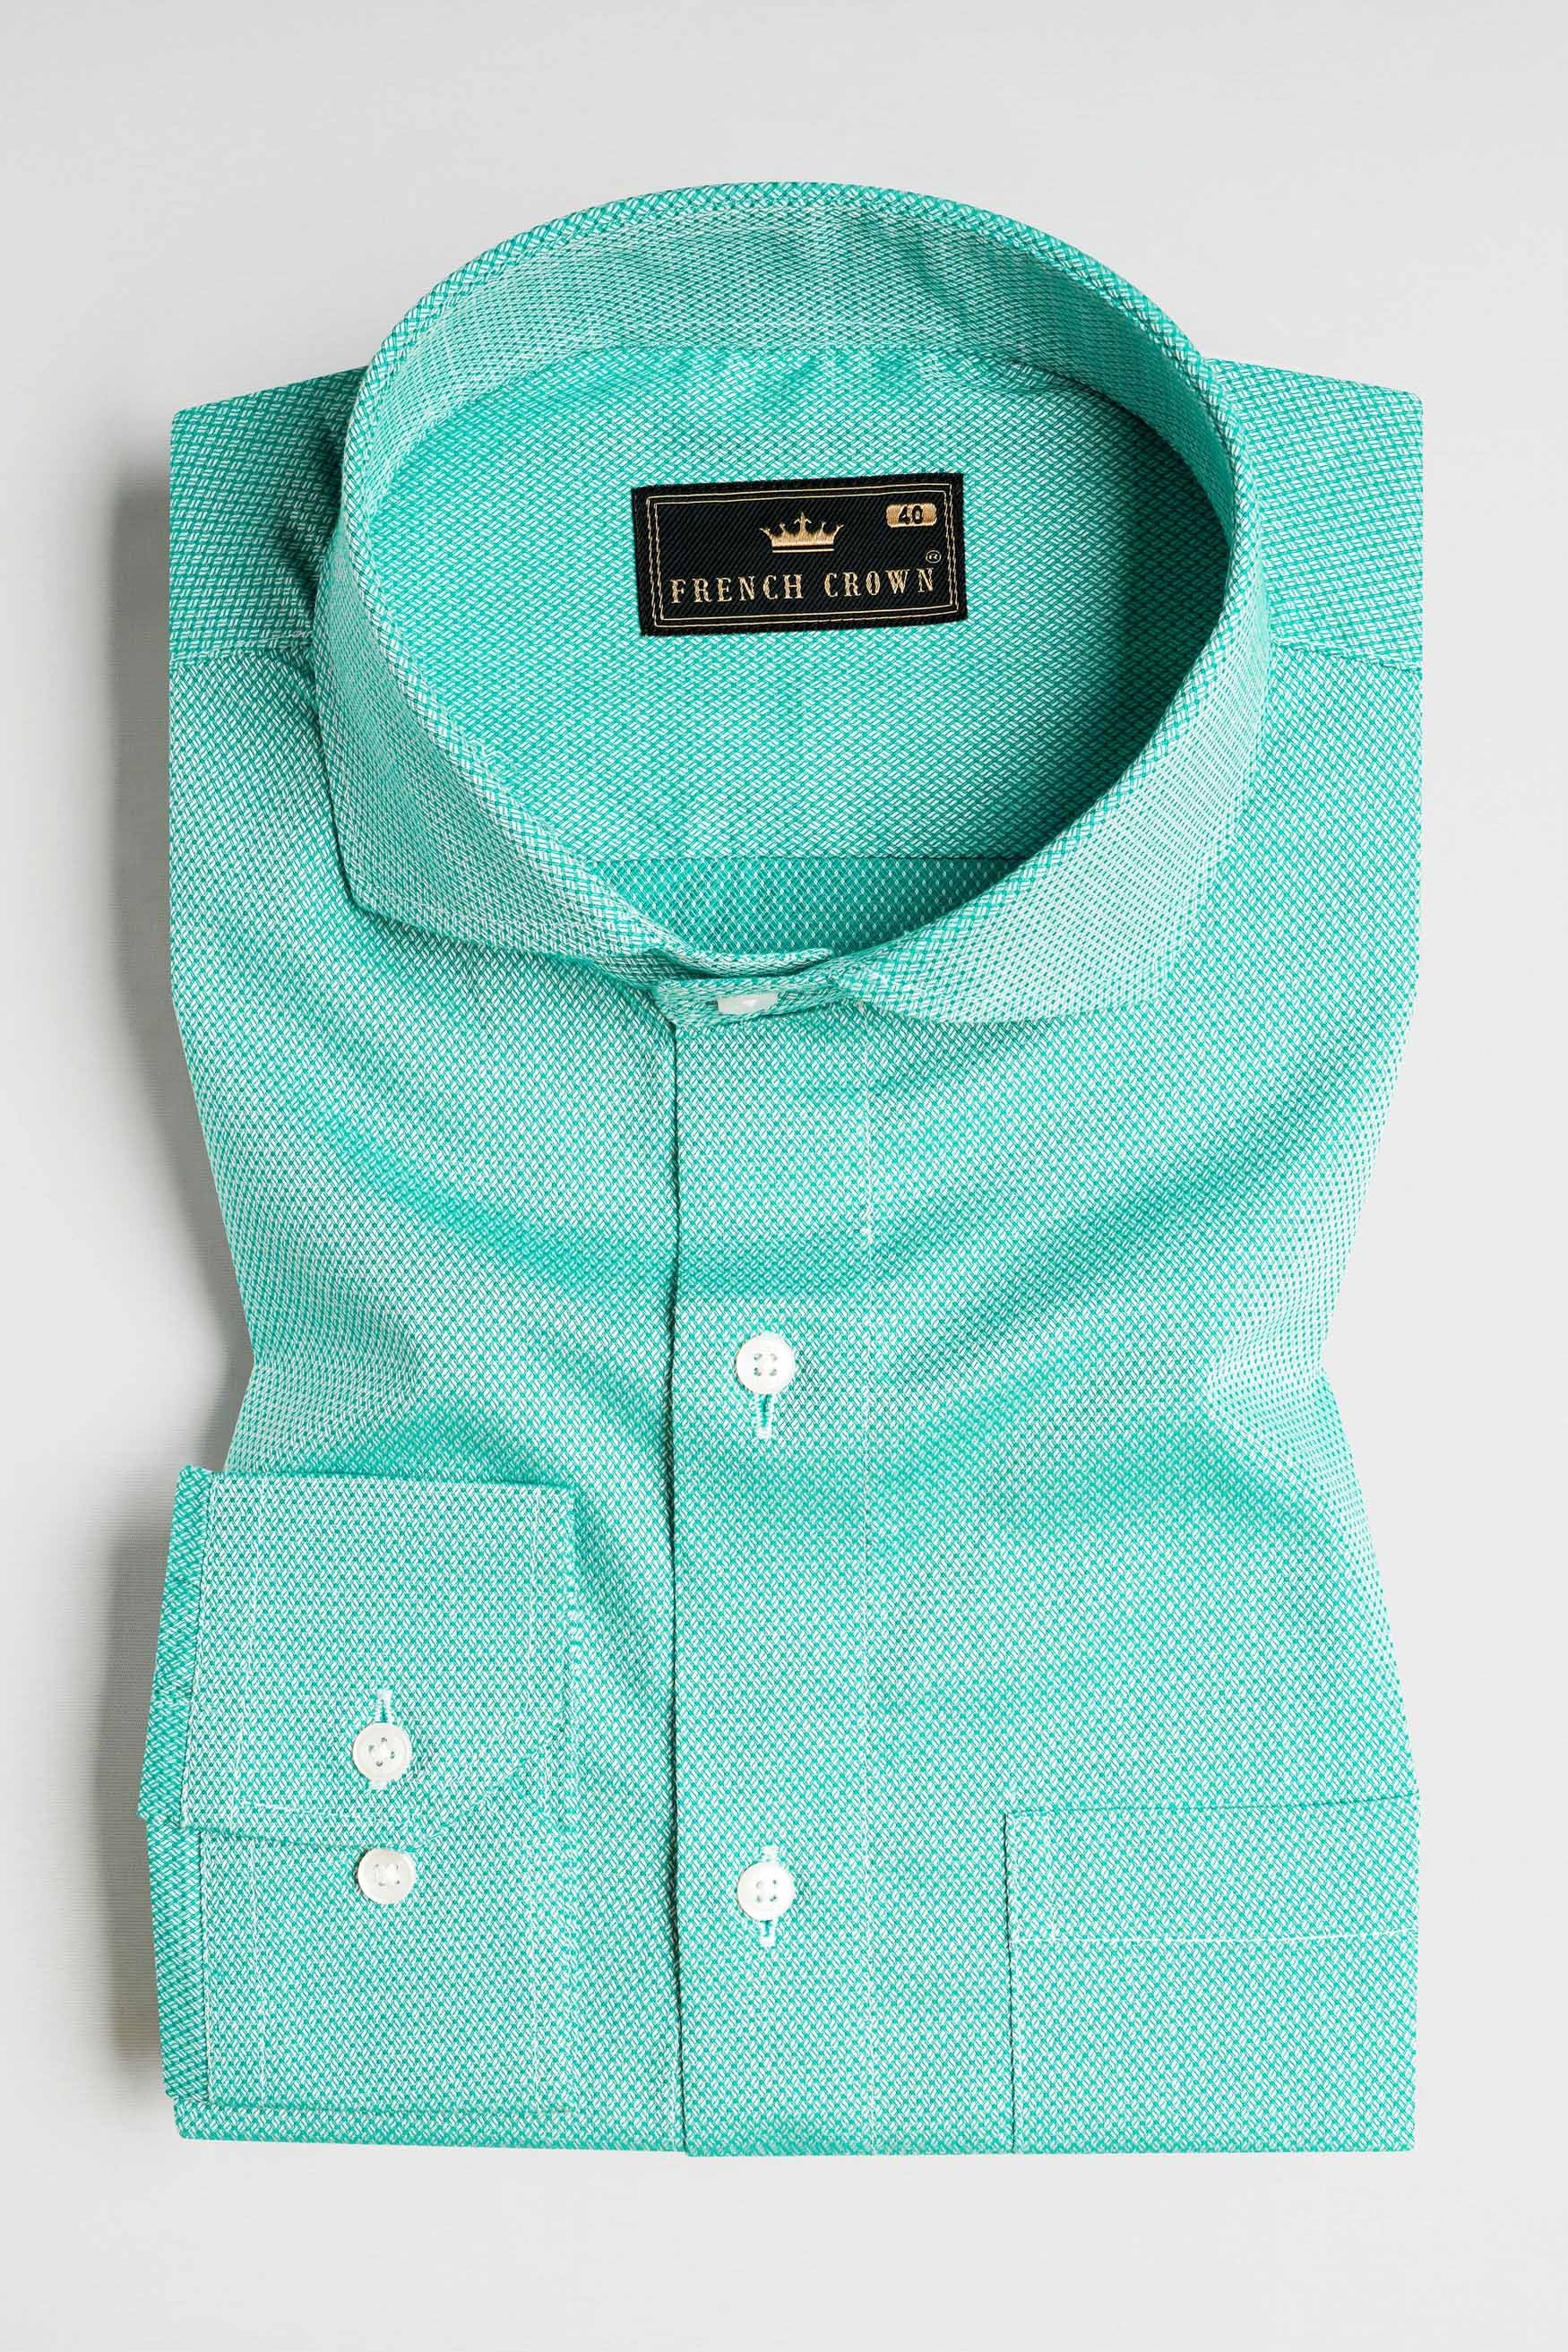 Aqua Blue Dobby Textured Premium Giza Cotton Shirt